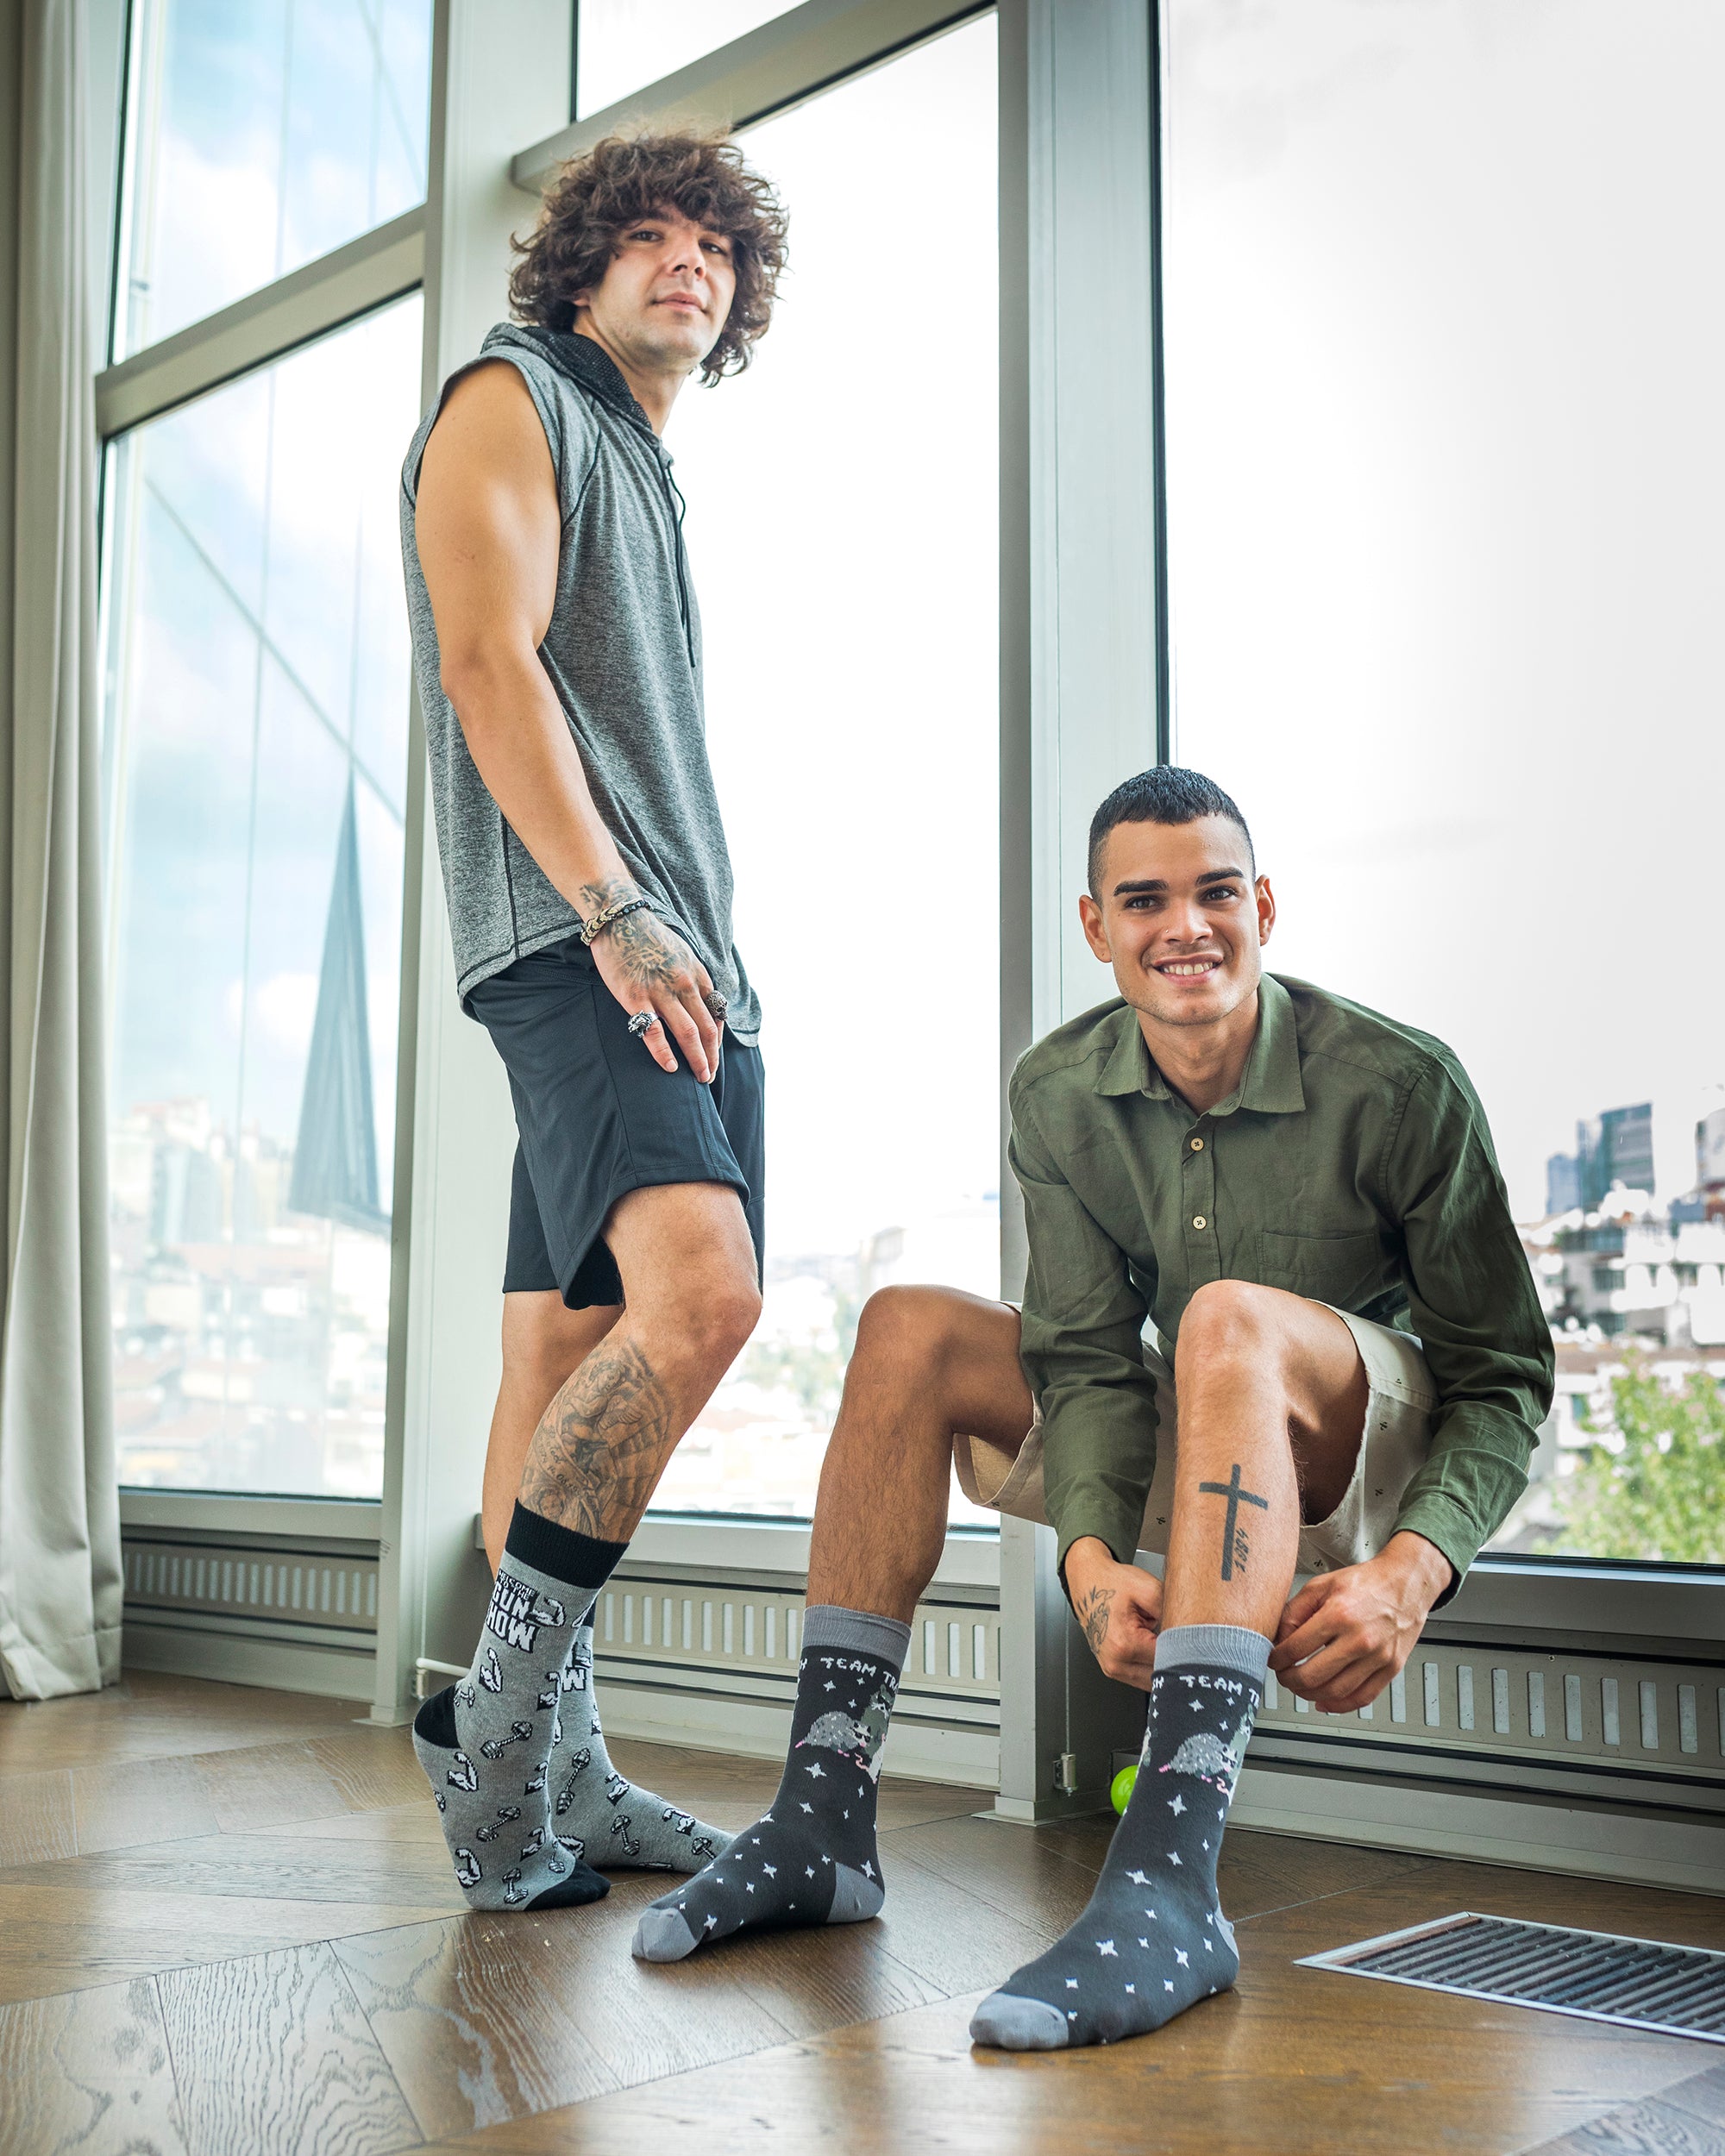 Crew Socks for Men – The Sock Factory